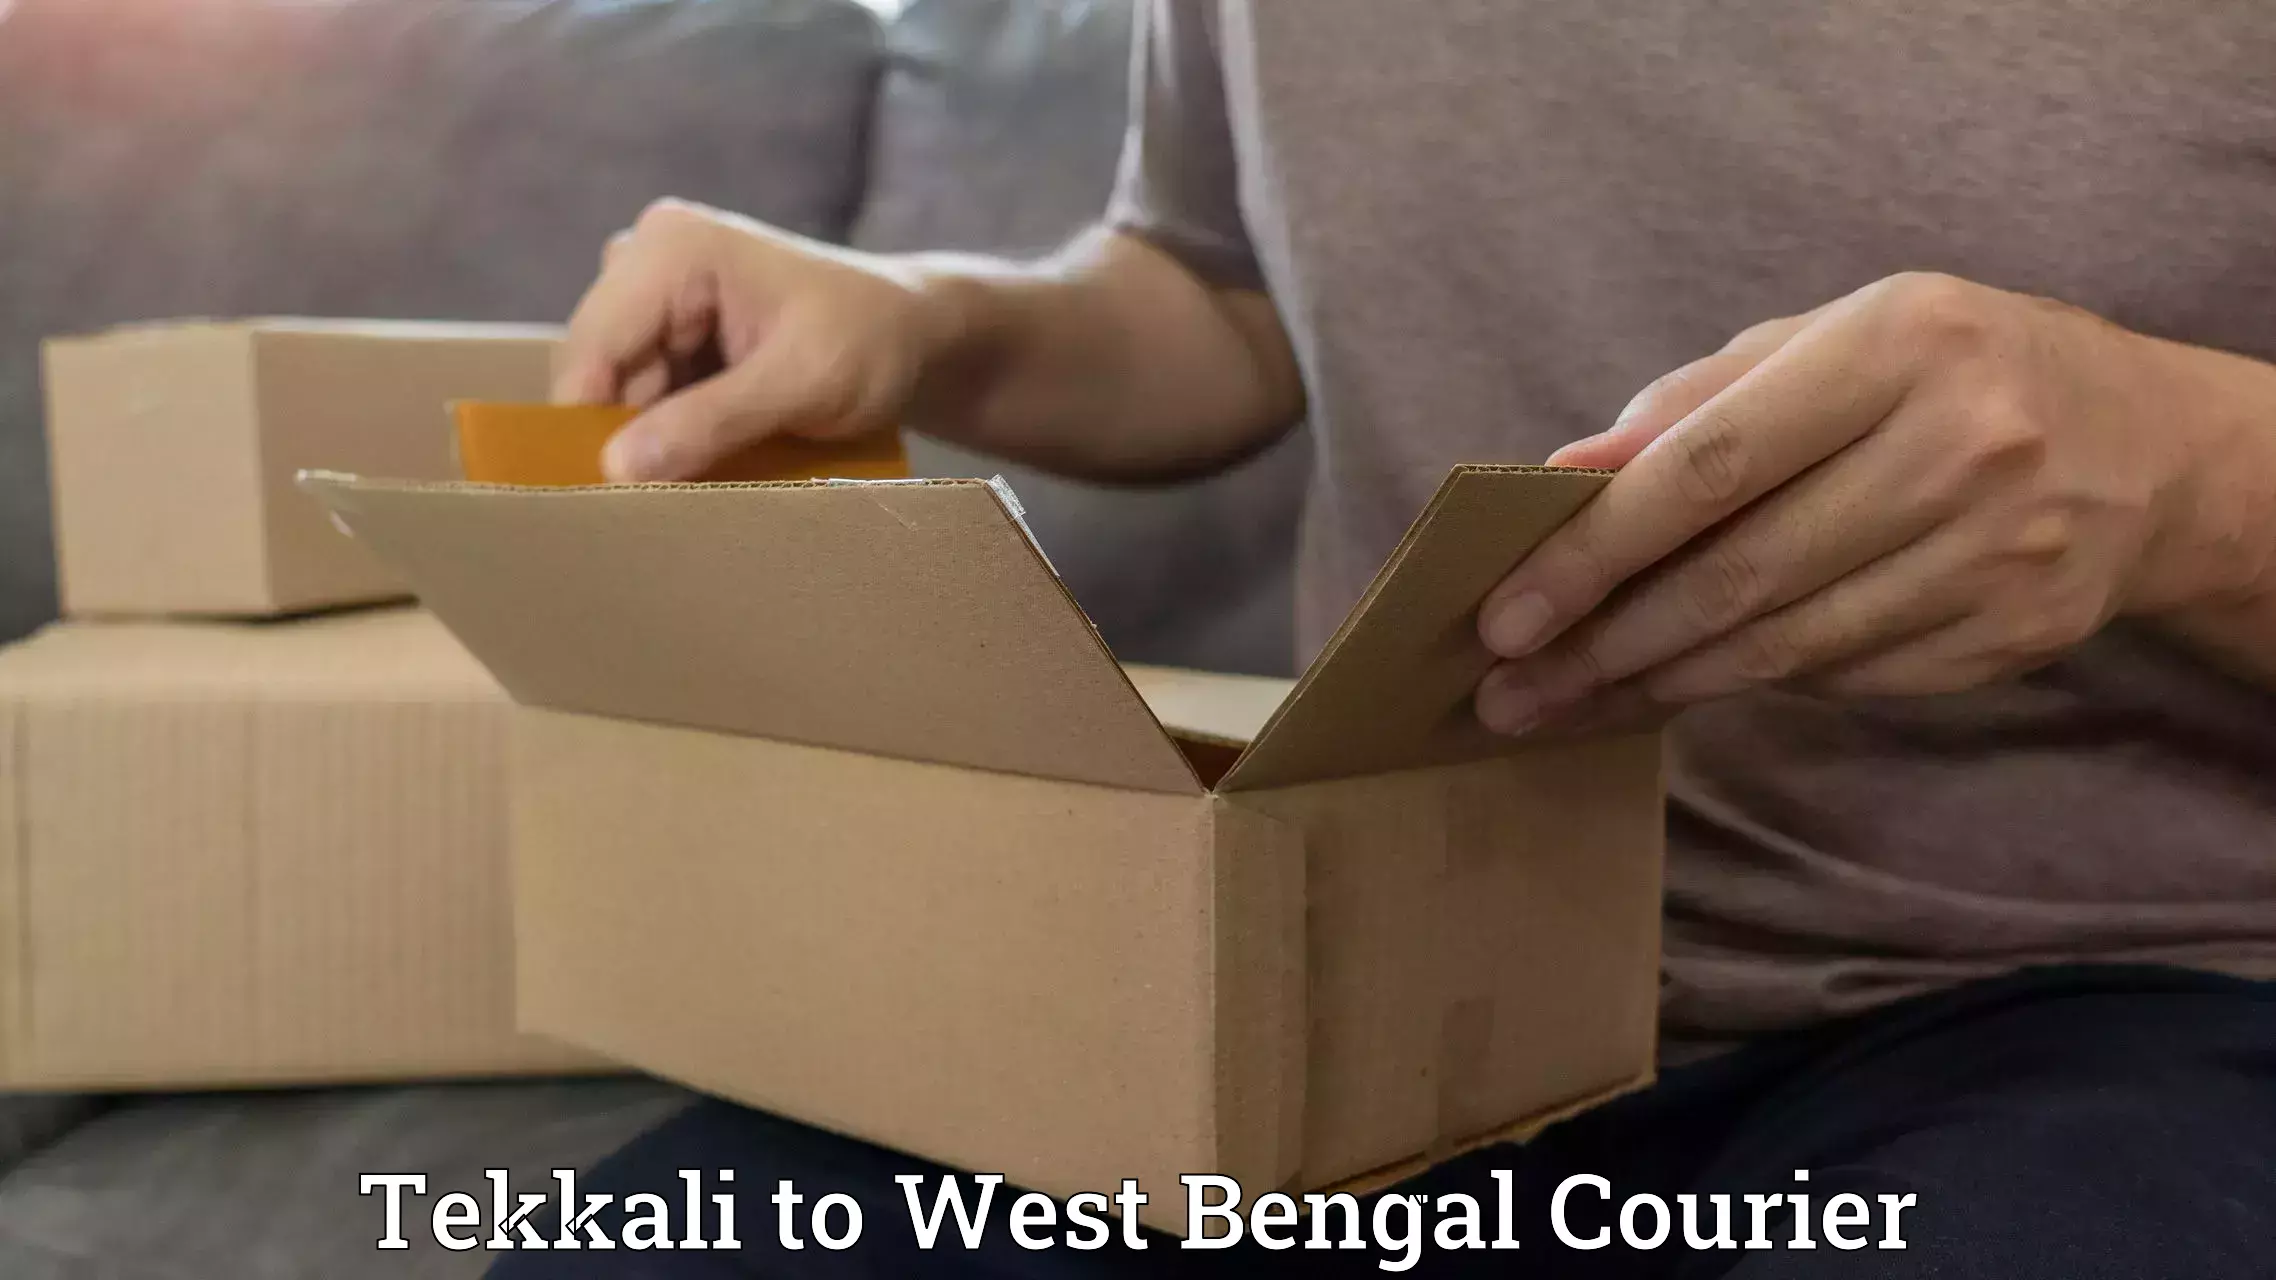 Professional parcel services Tekkali to Taki